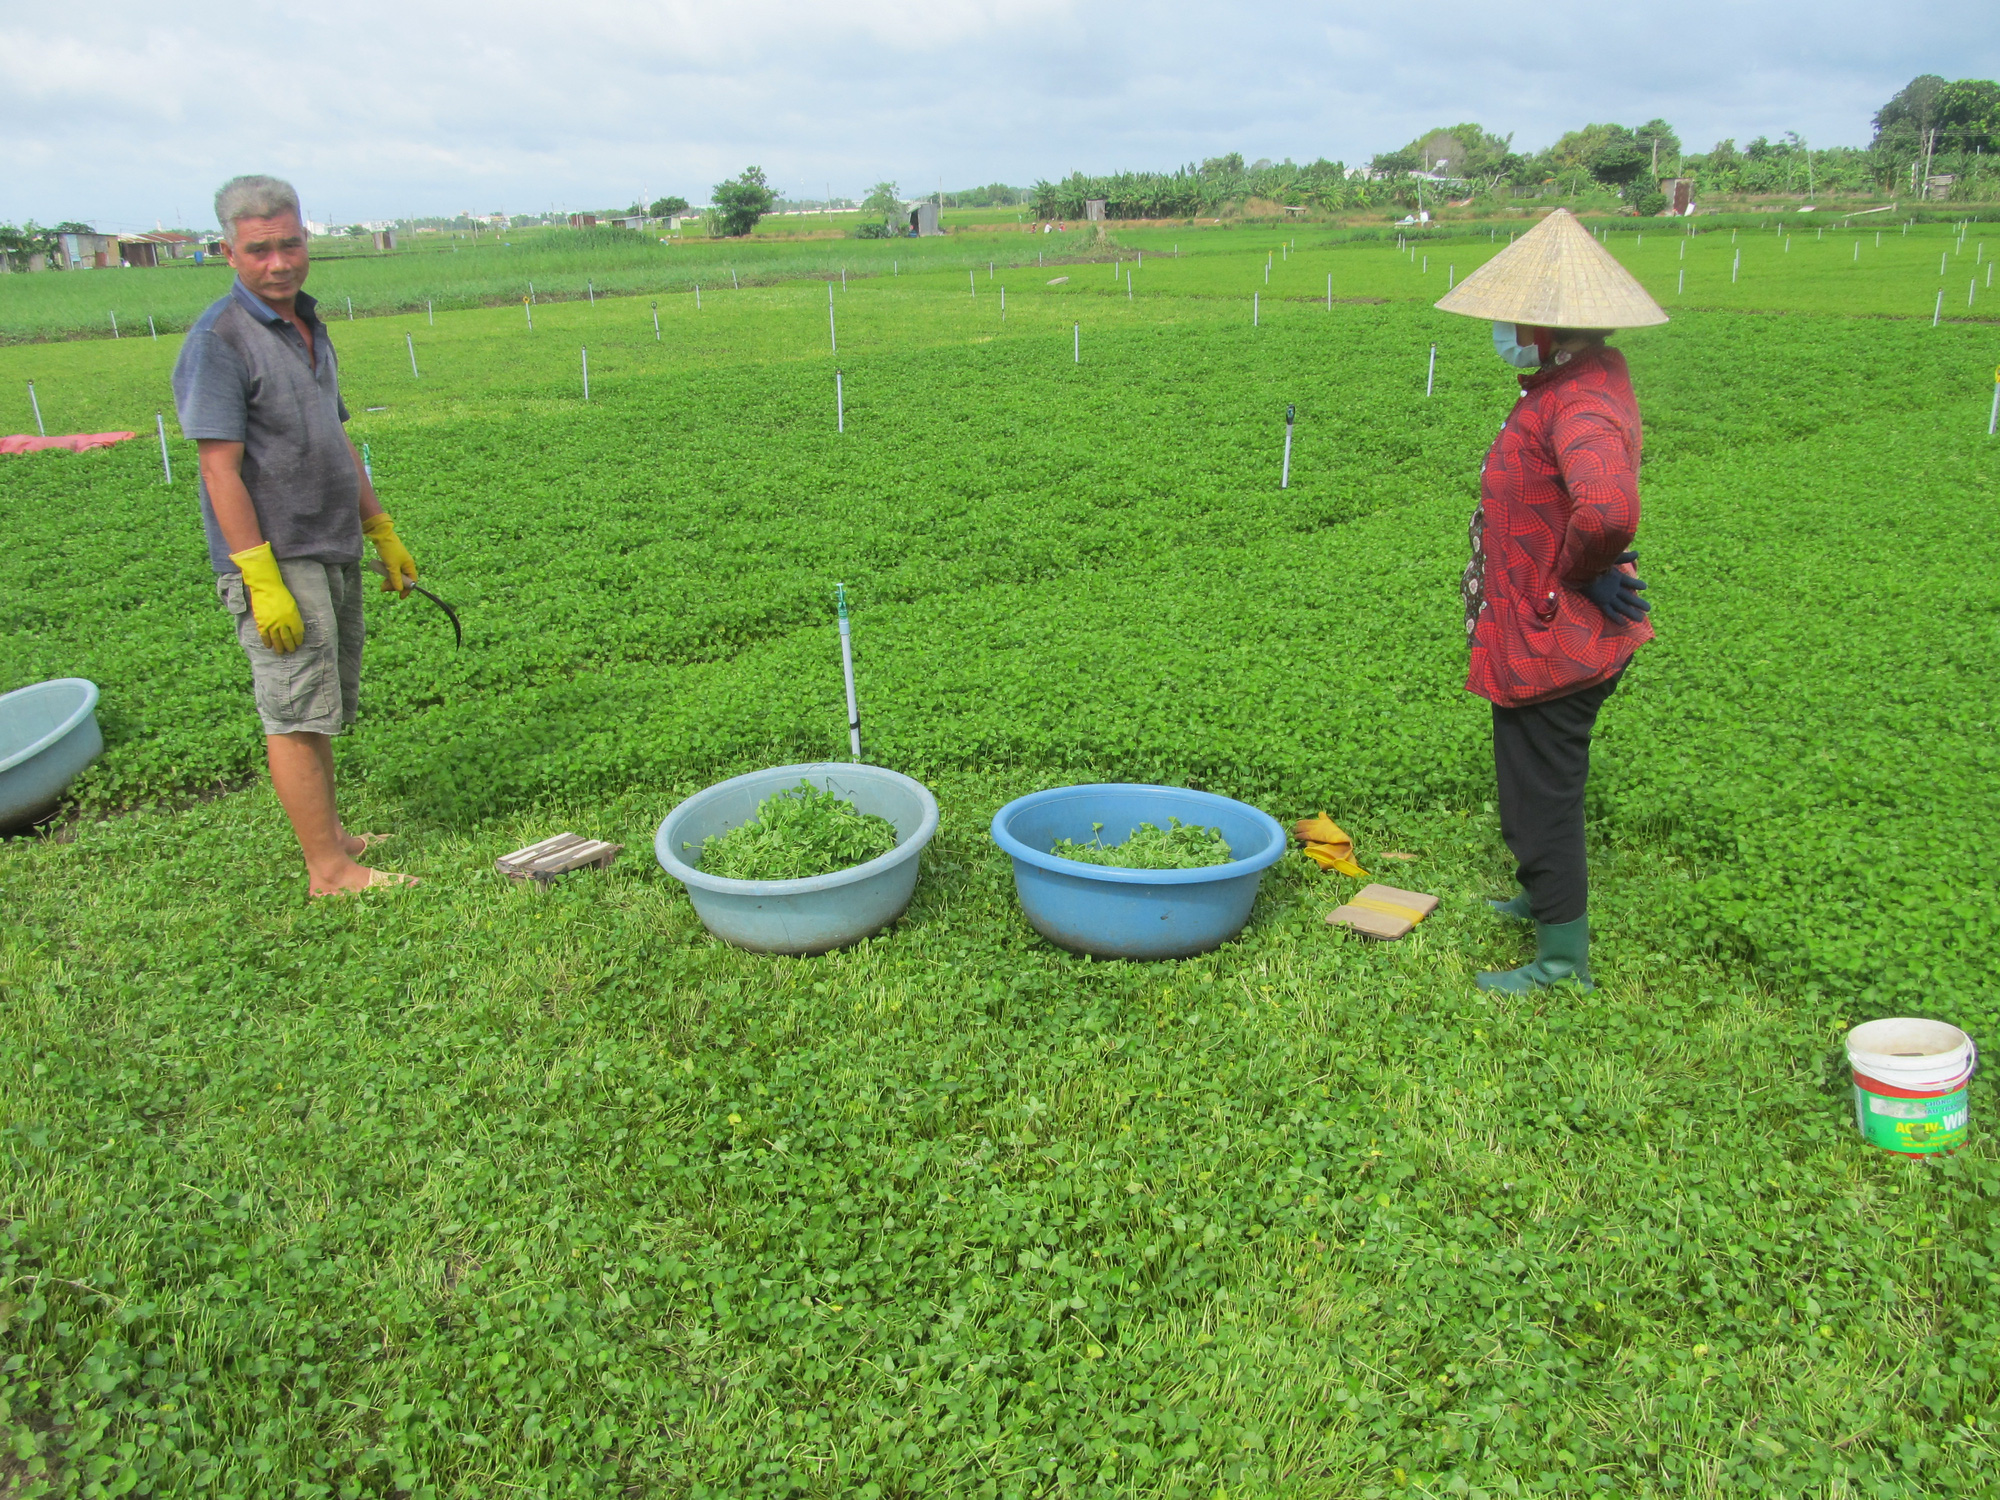 Giá rau má rẻ như cho mà vẫn không bán được, nông dân Long Phước cắt rau má cho heo rừng ăn - Ảnh 2.